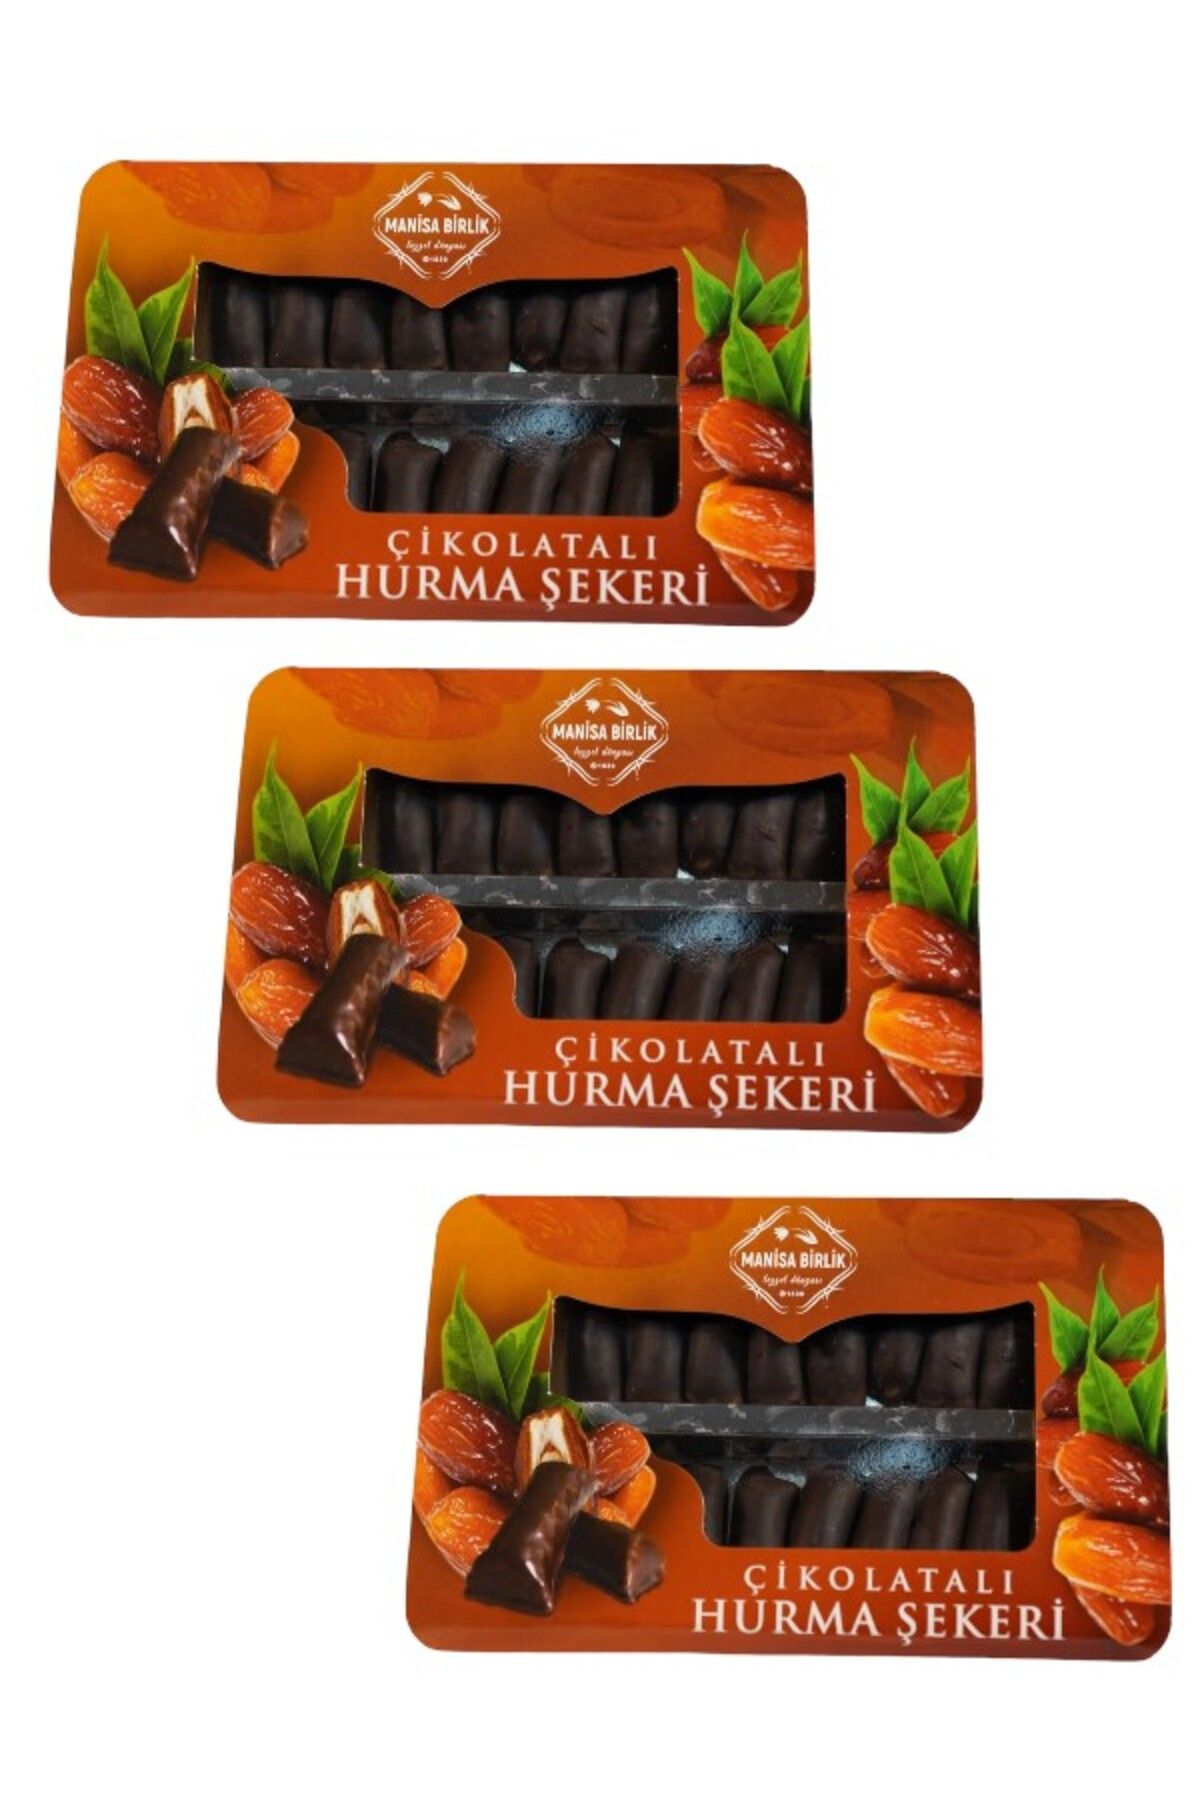 MANİSA BİRLİK Çikolatalı Hurma Şekeri 250 gr 3 Paket